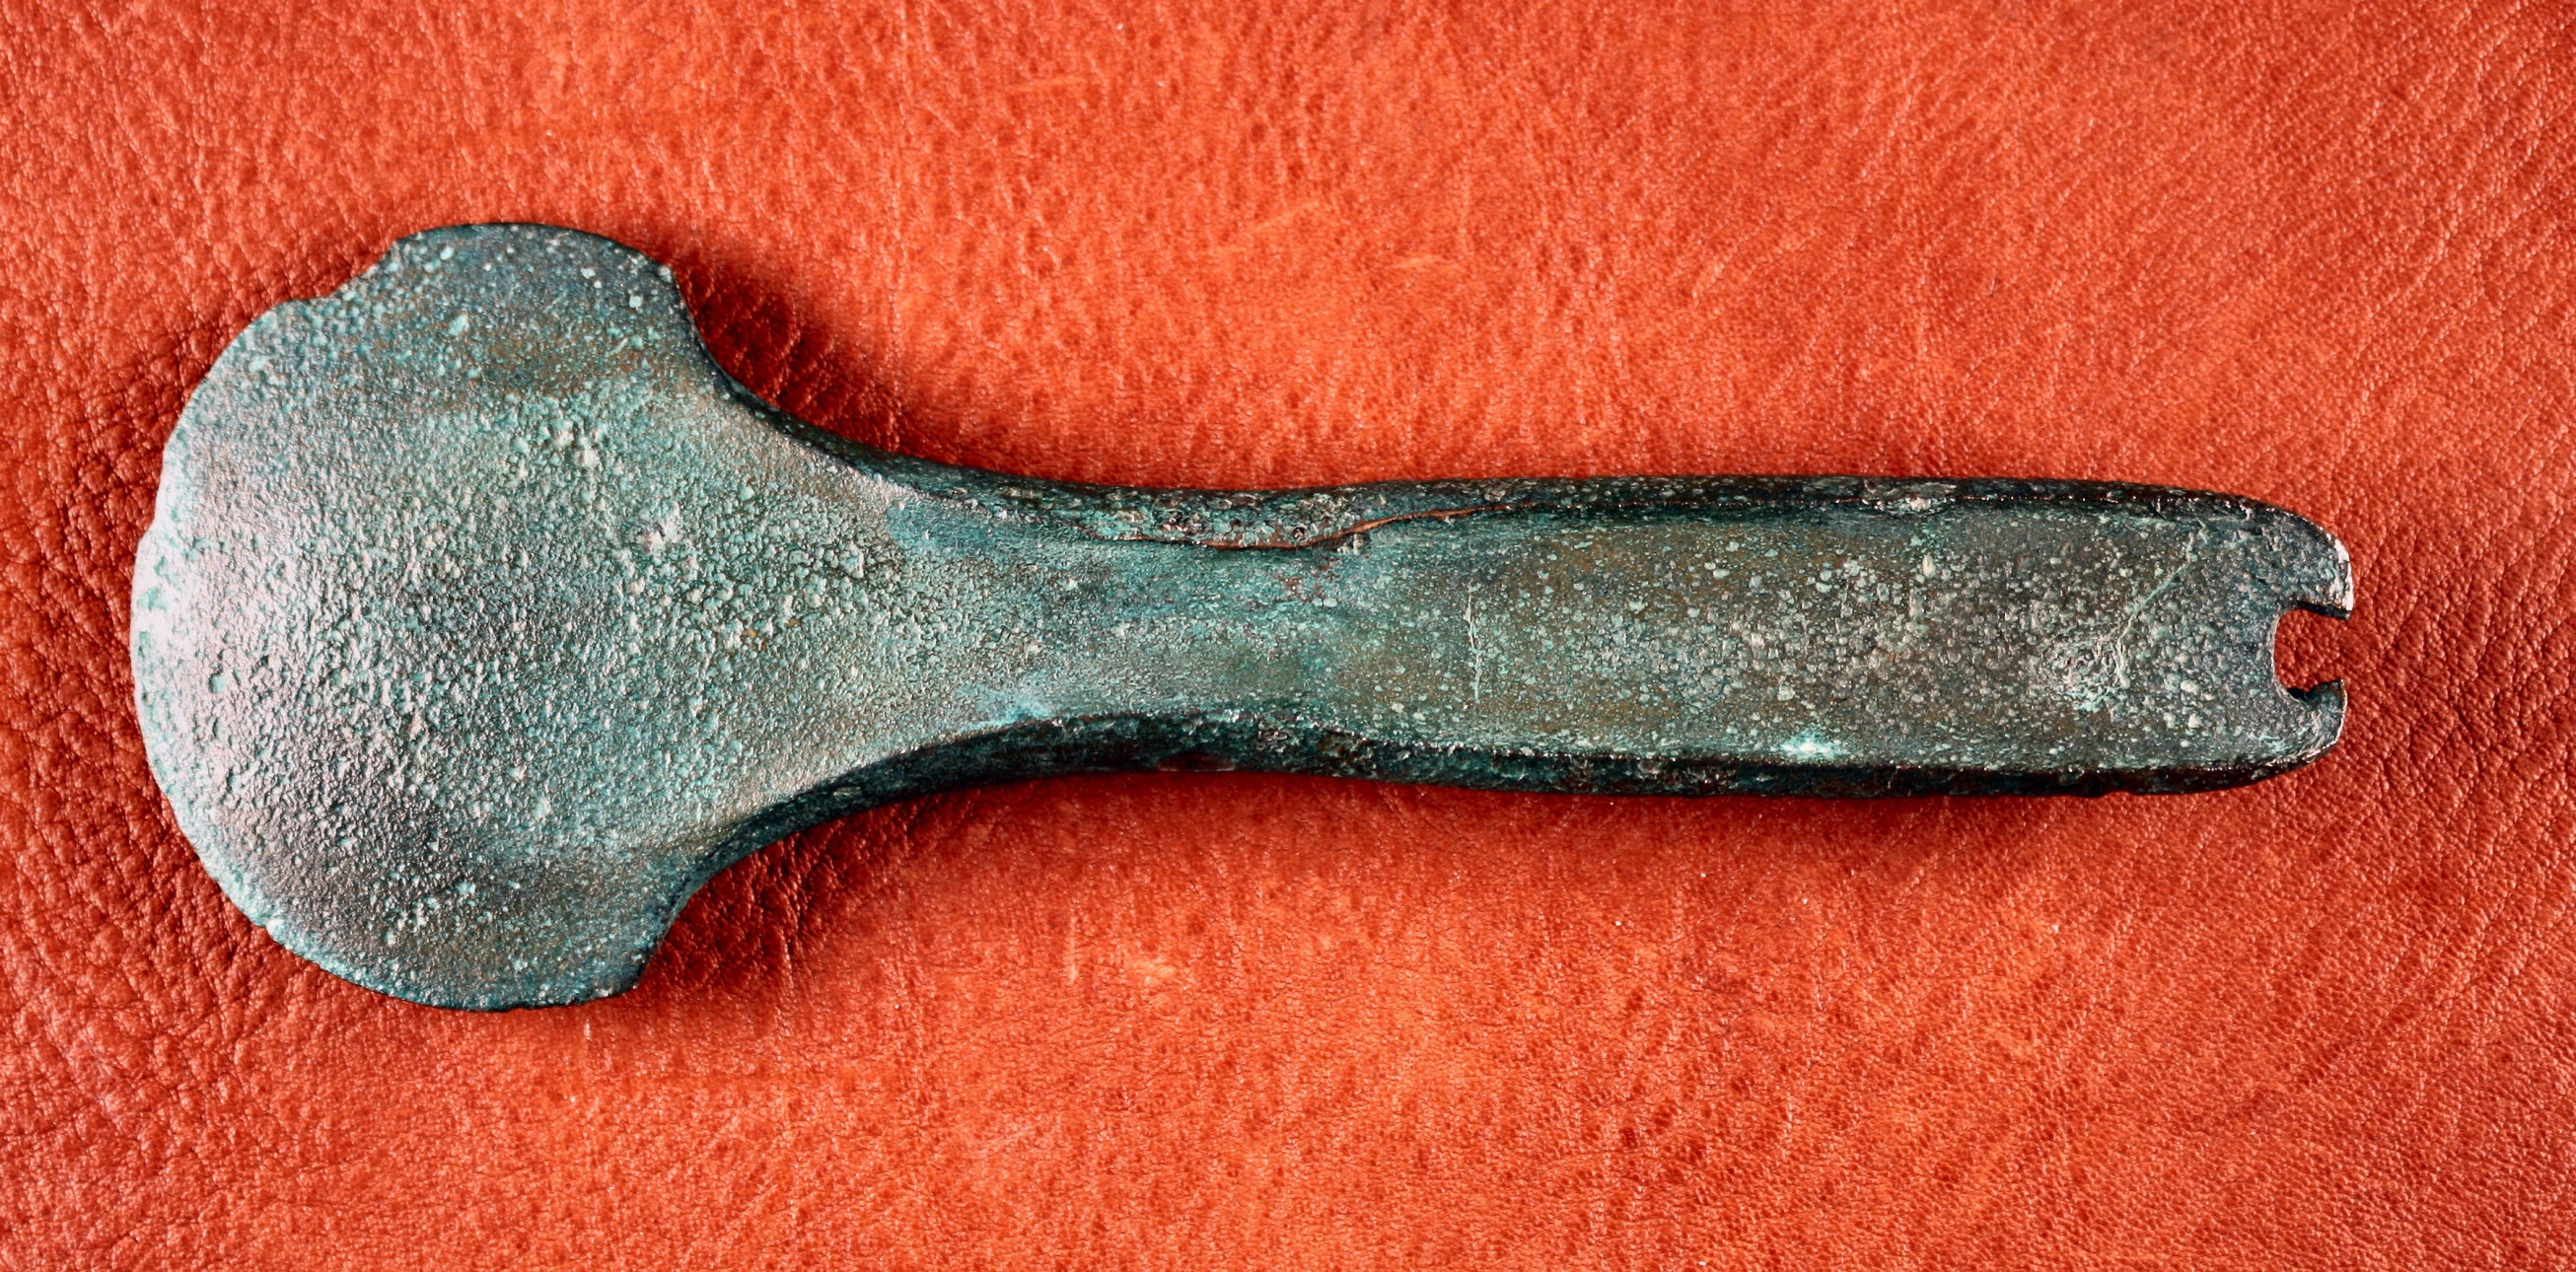 Randleistenbeil vom Typ „Langquaid“ aus dem Hortfund von Kläden bei Stendal (Johann-Friedrich-Danneil-Museum Salzwedel CC BY-NC-SA)